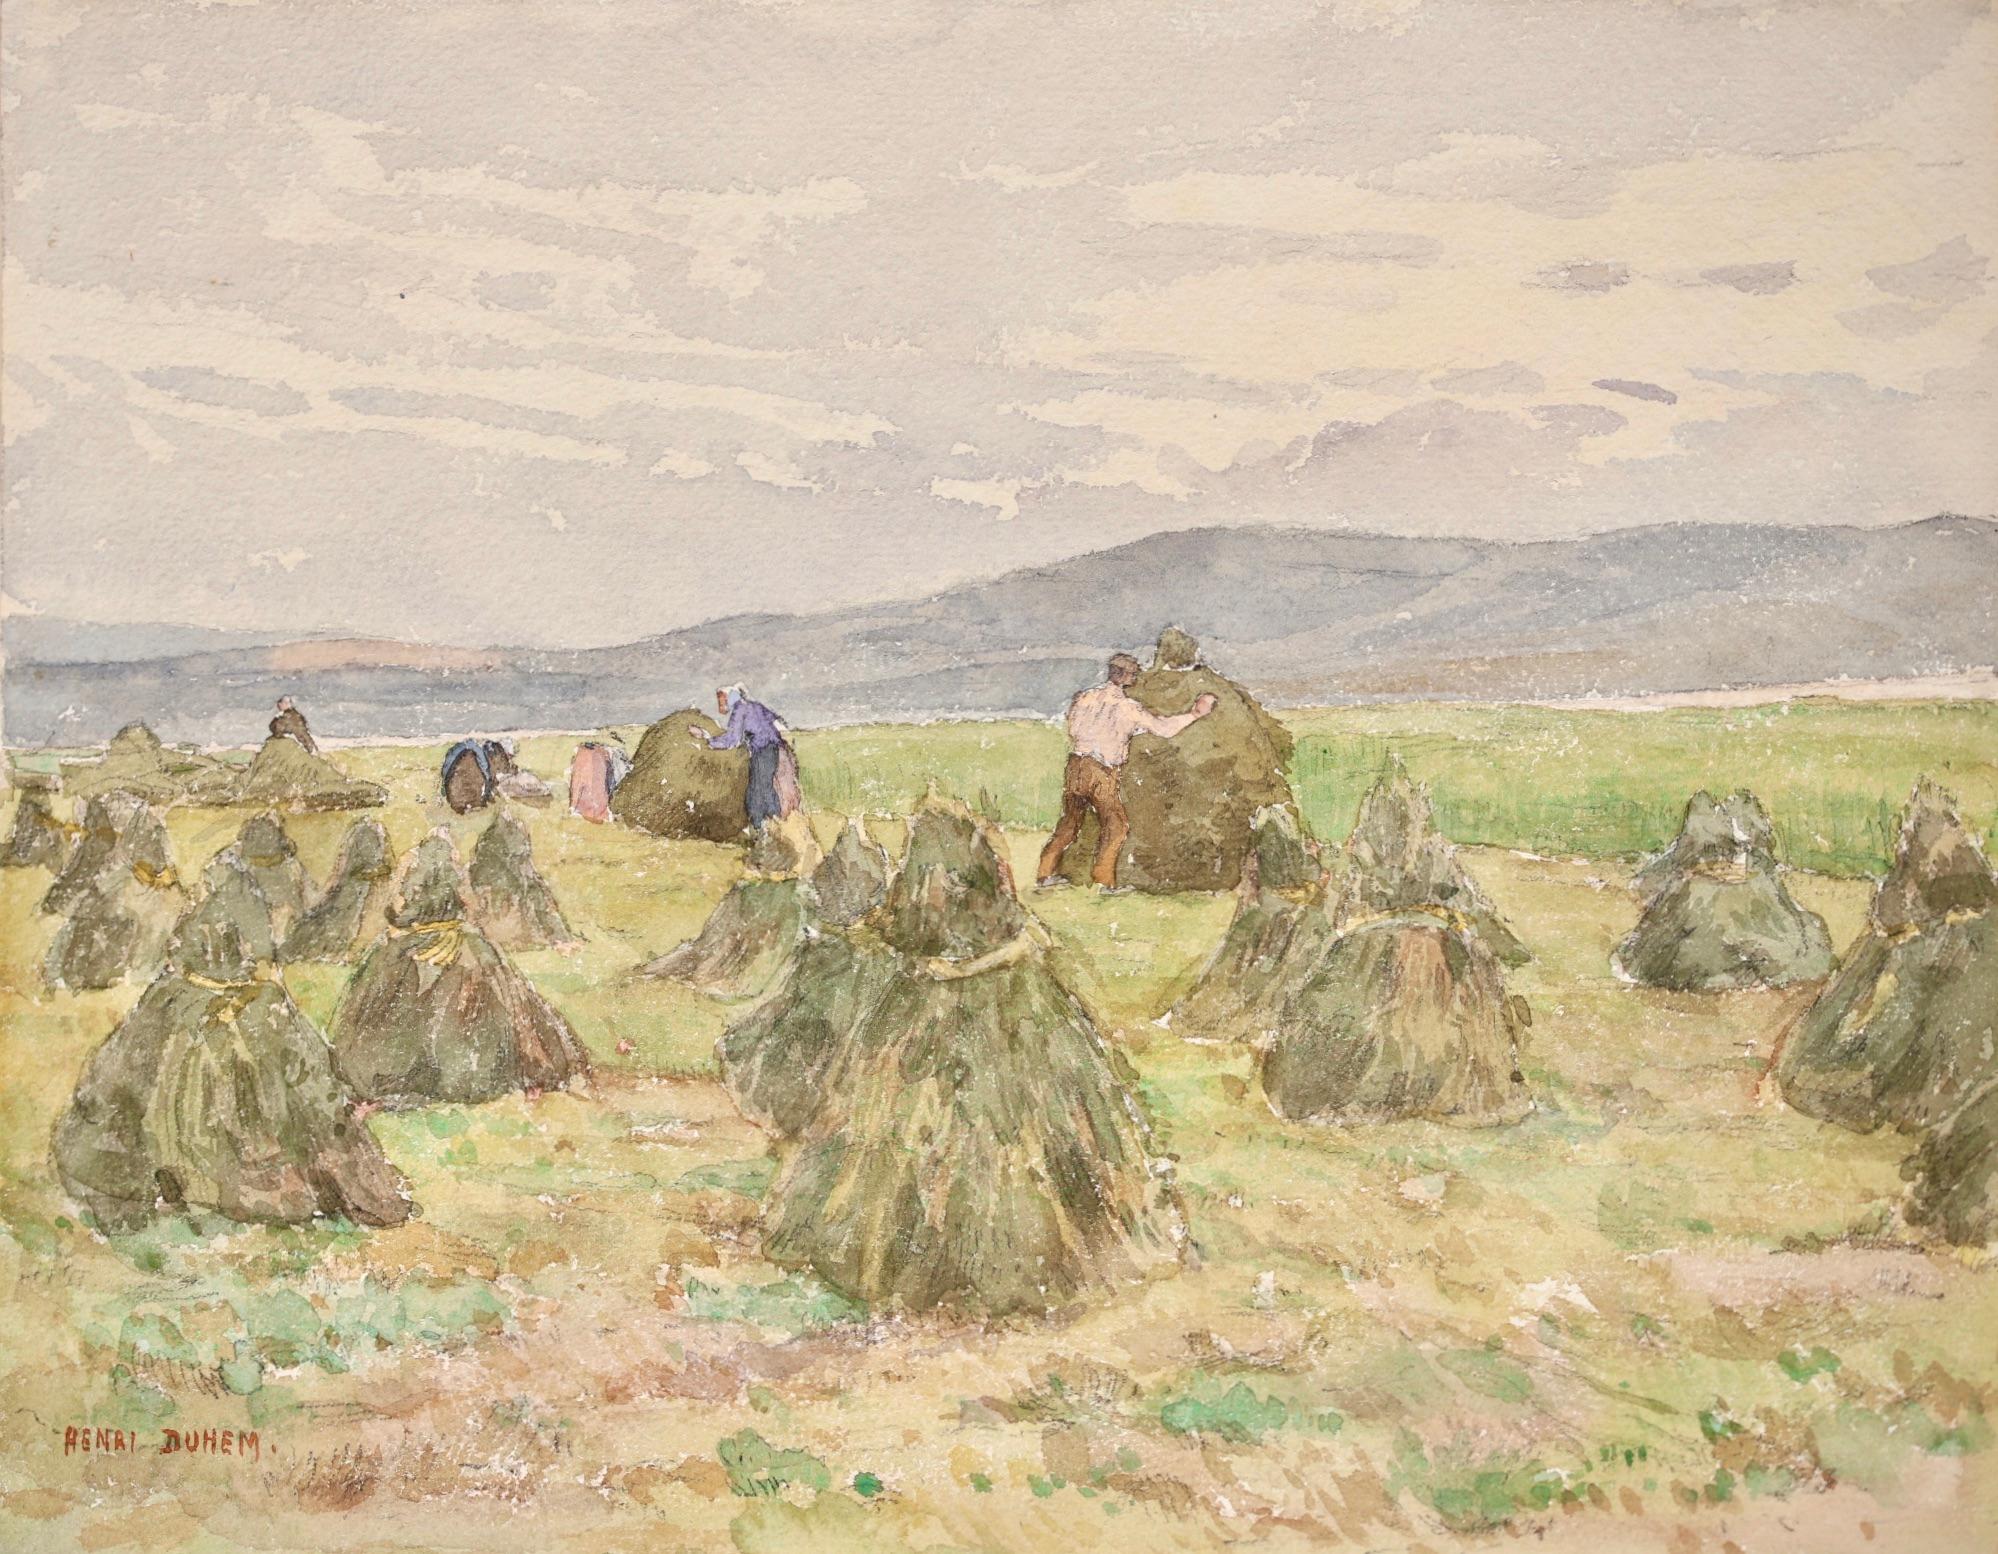 Ein wunderschönes Aquarell auf Papier um 1920 von dem französischen impressionistischen Maler Henri Duhem. Die Arbeiter auf einem Feld bei der Heuernte.

Unterschrift:
Signiert unten links 

Abmessungen:
Ungerahmt: 9 "x11.5"
Dieses Gemälde ist